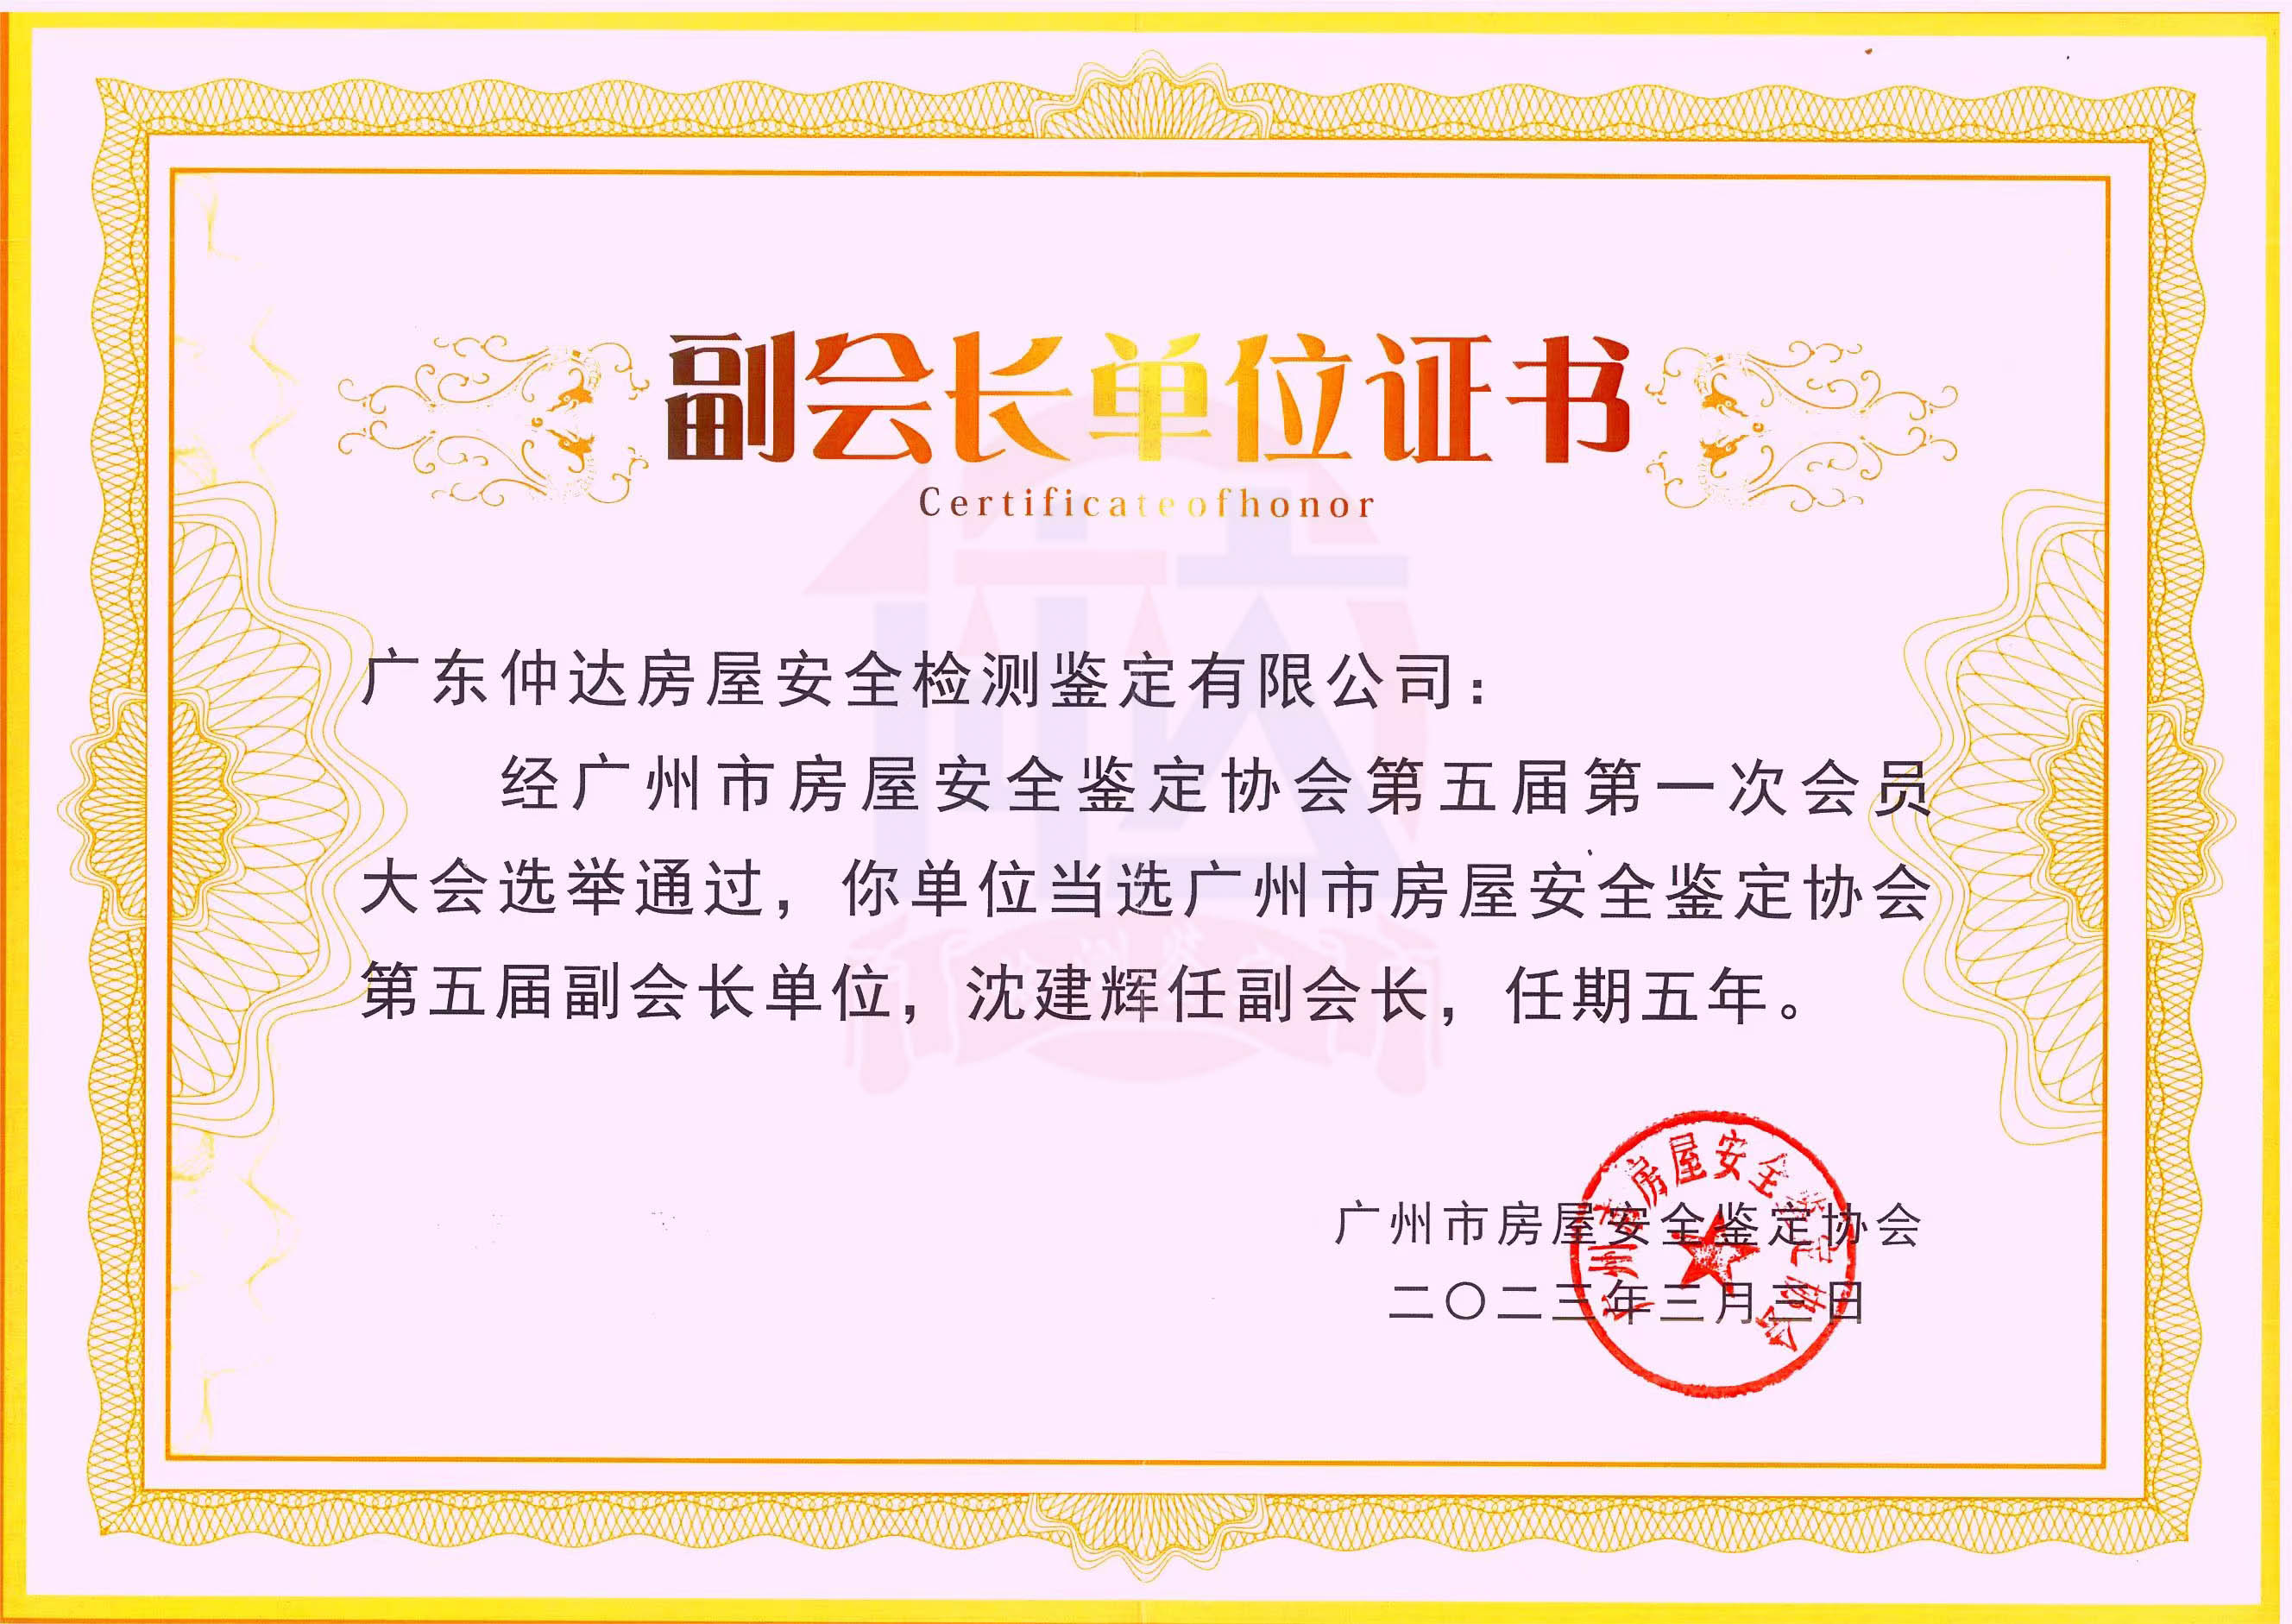 广州市房屋安全鉴定协会第五届副会长单位